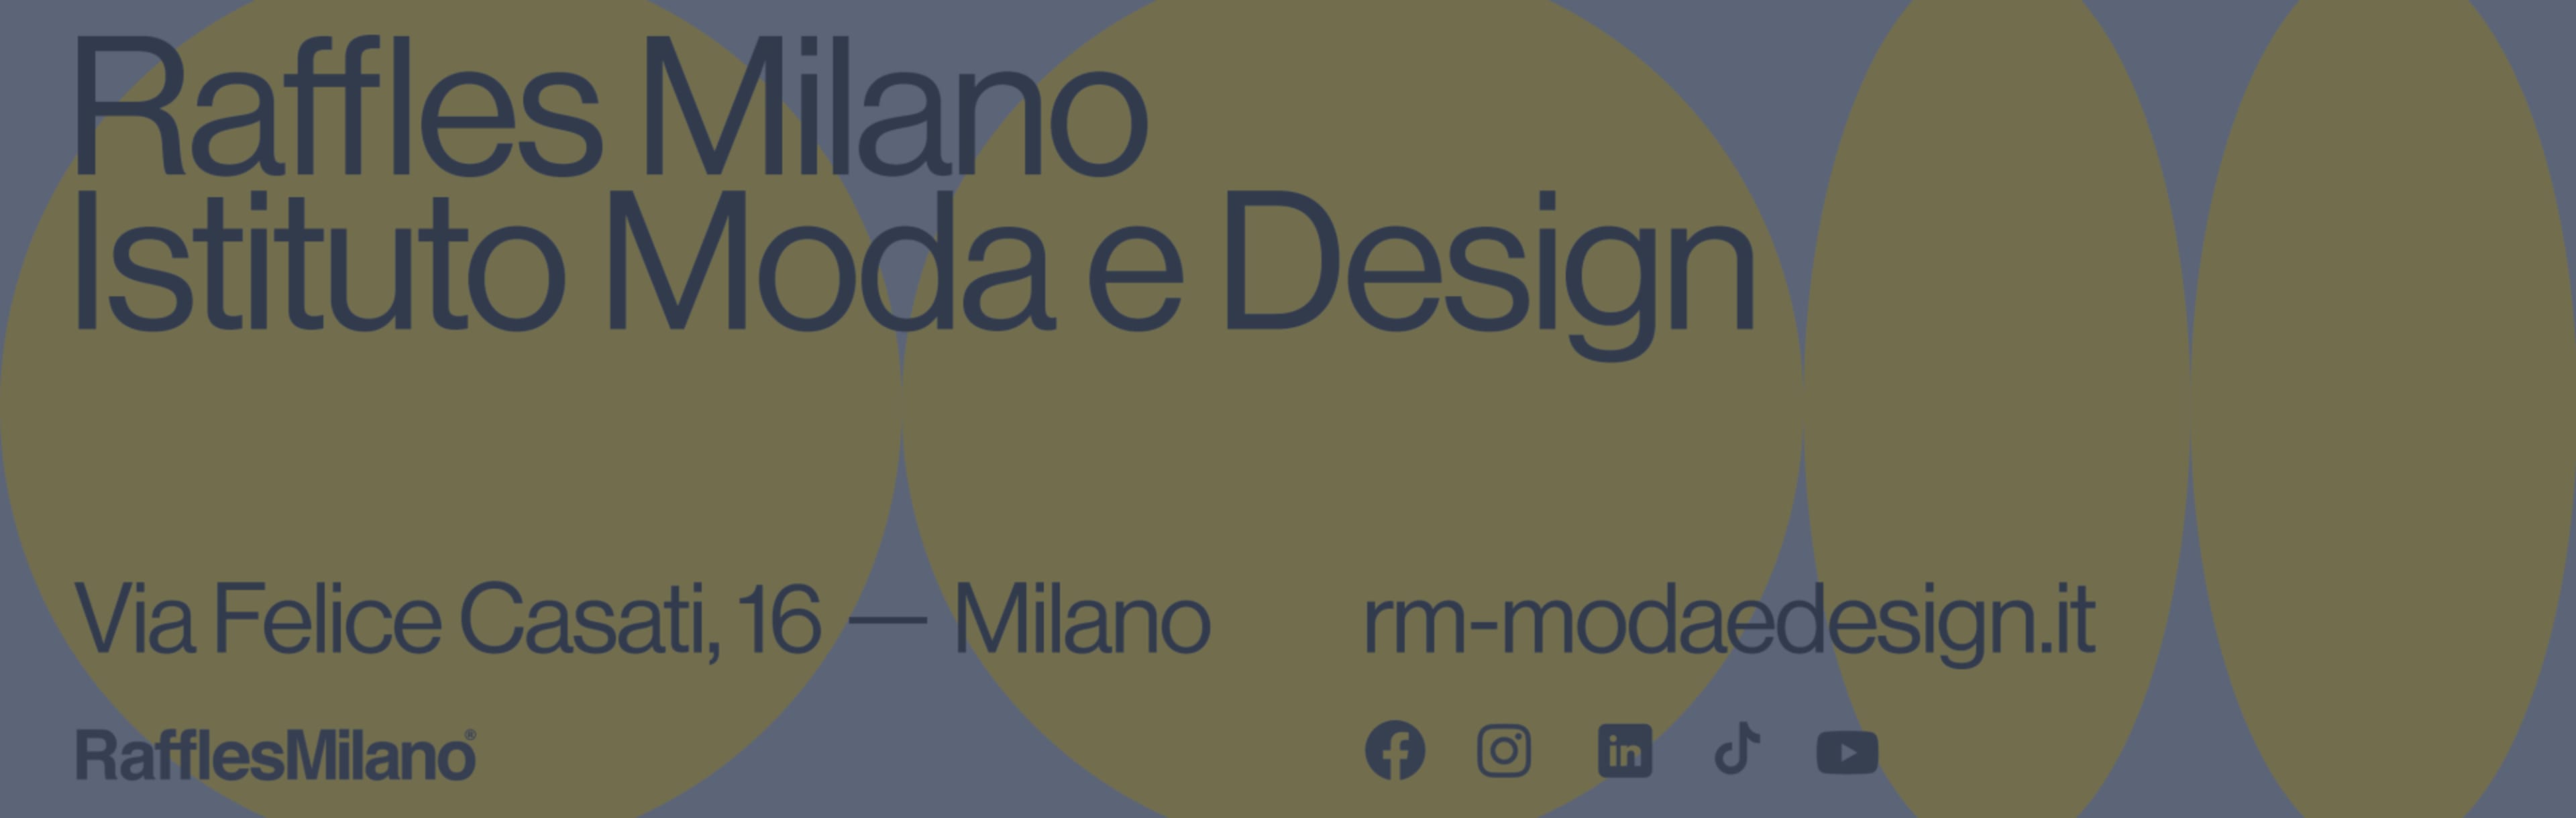 Raffles Milano Istituto Moda e Design